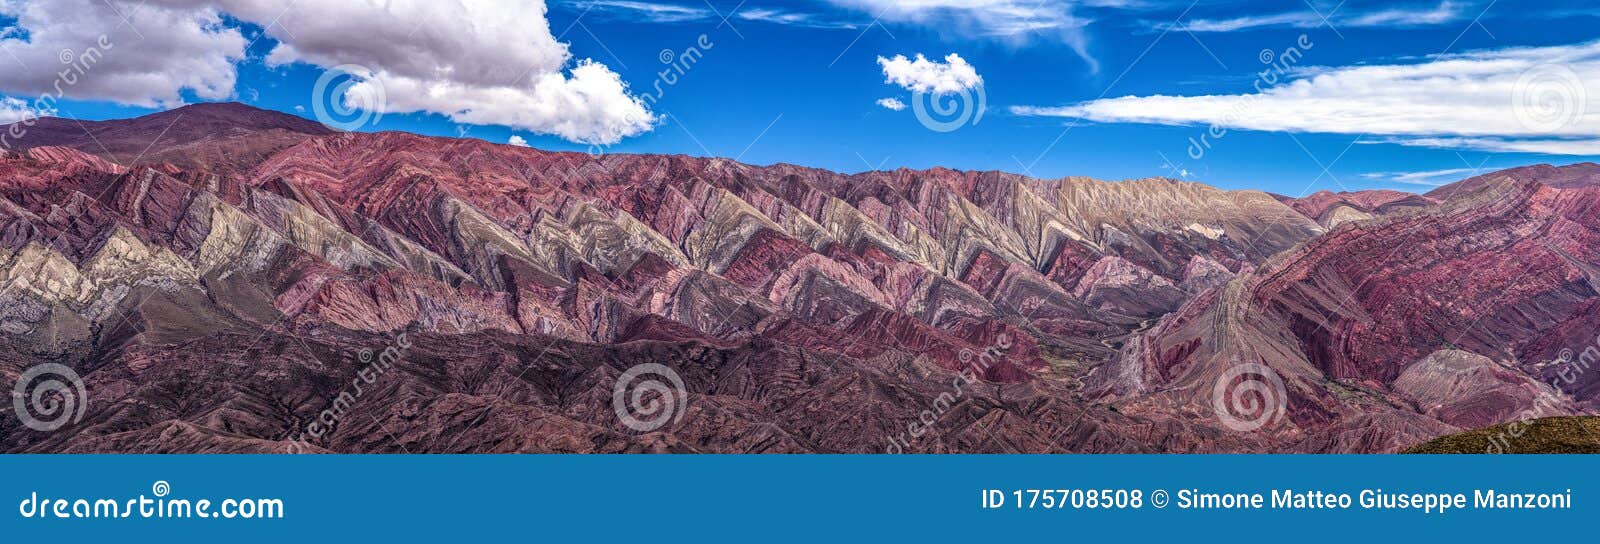 serranias del hornocal, cerro de los 14 colores, humahuaca, argentina